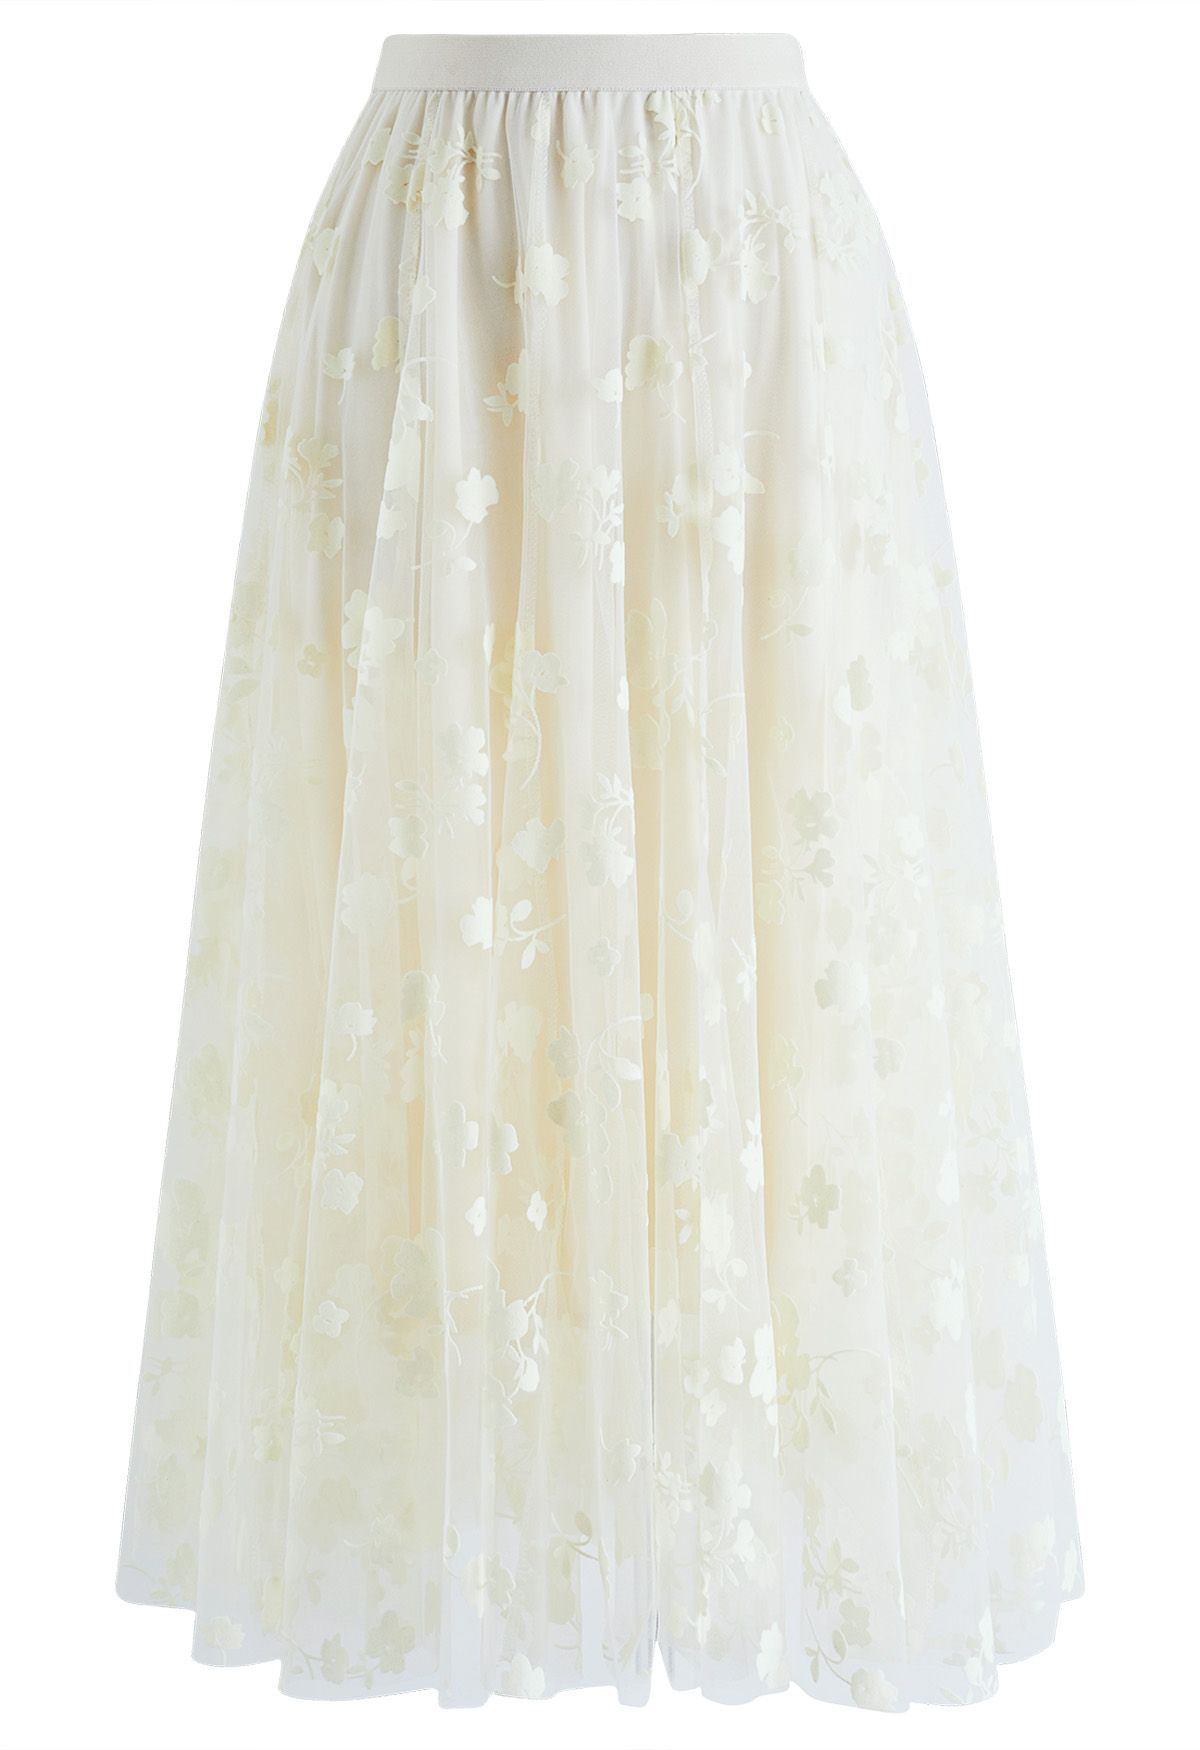 Falda midi de malla de doble capa en color crema de 3D Posy